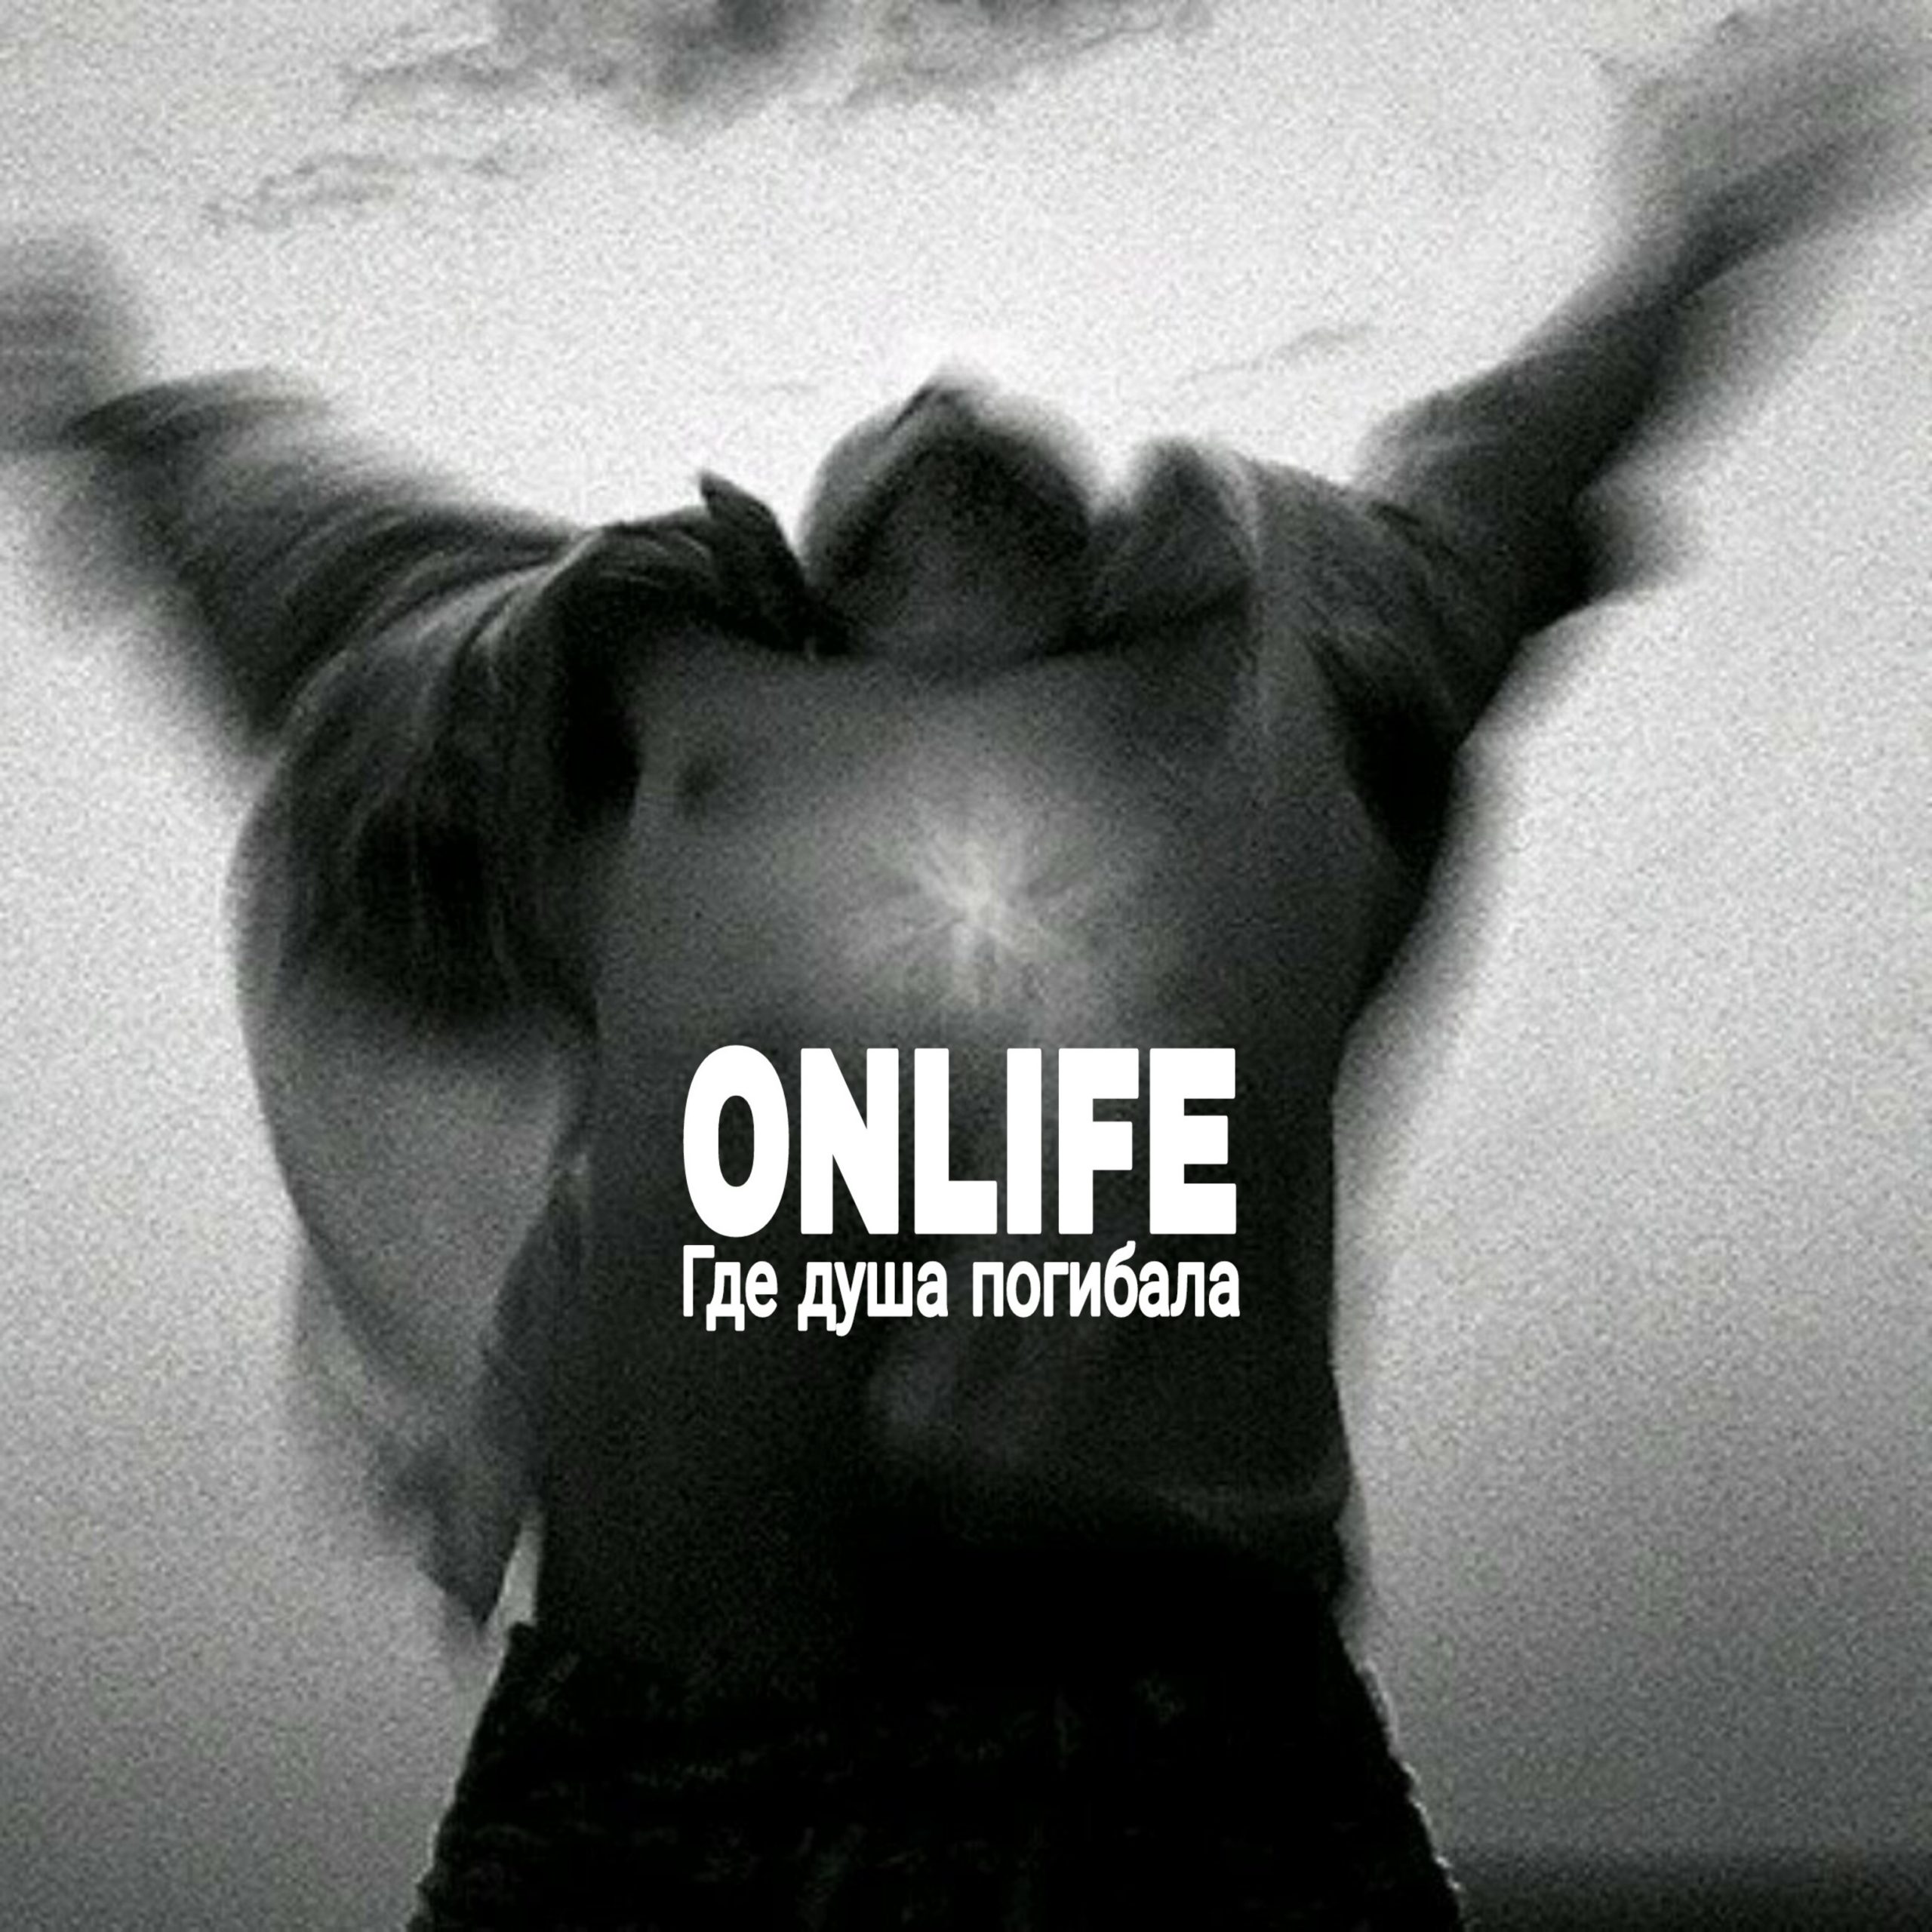 Душа гибнет. Onlife певец. "Onlife" && ( исполнитель | группа | музыка | Music | Band | artist ) && (фото | photo). Что это означает Onlife.